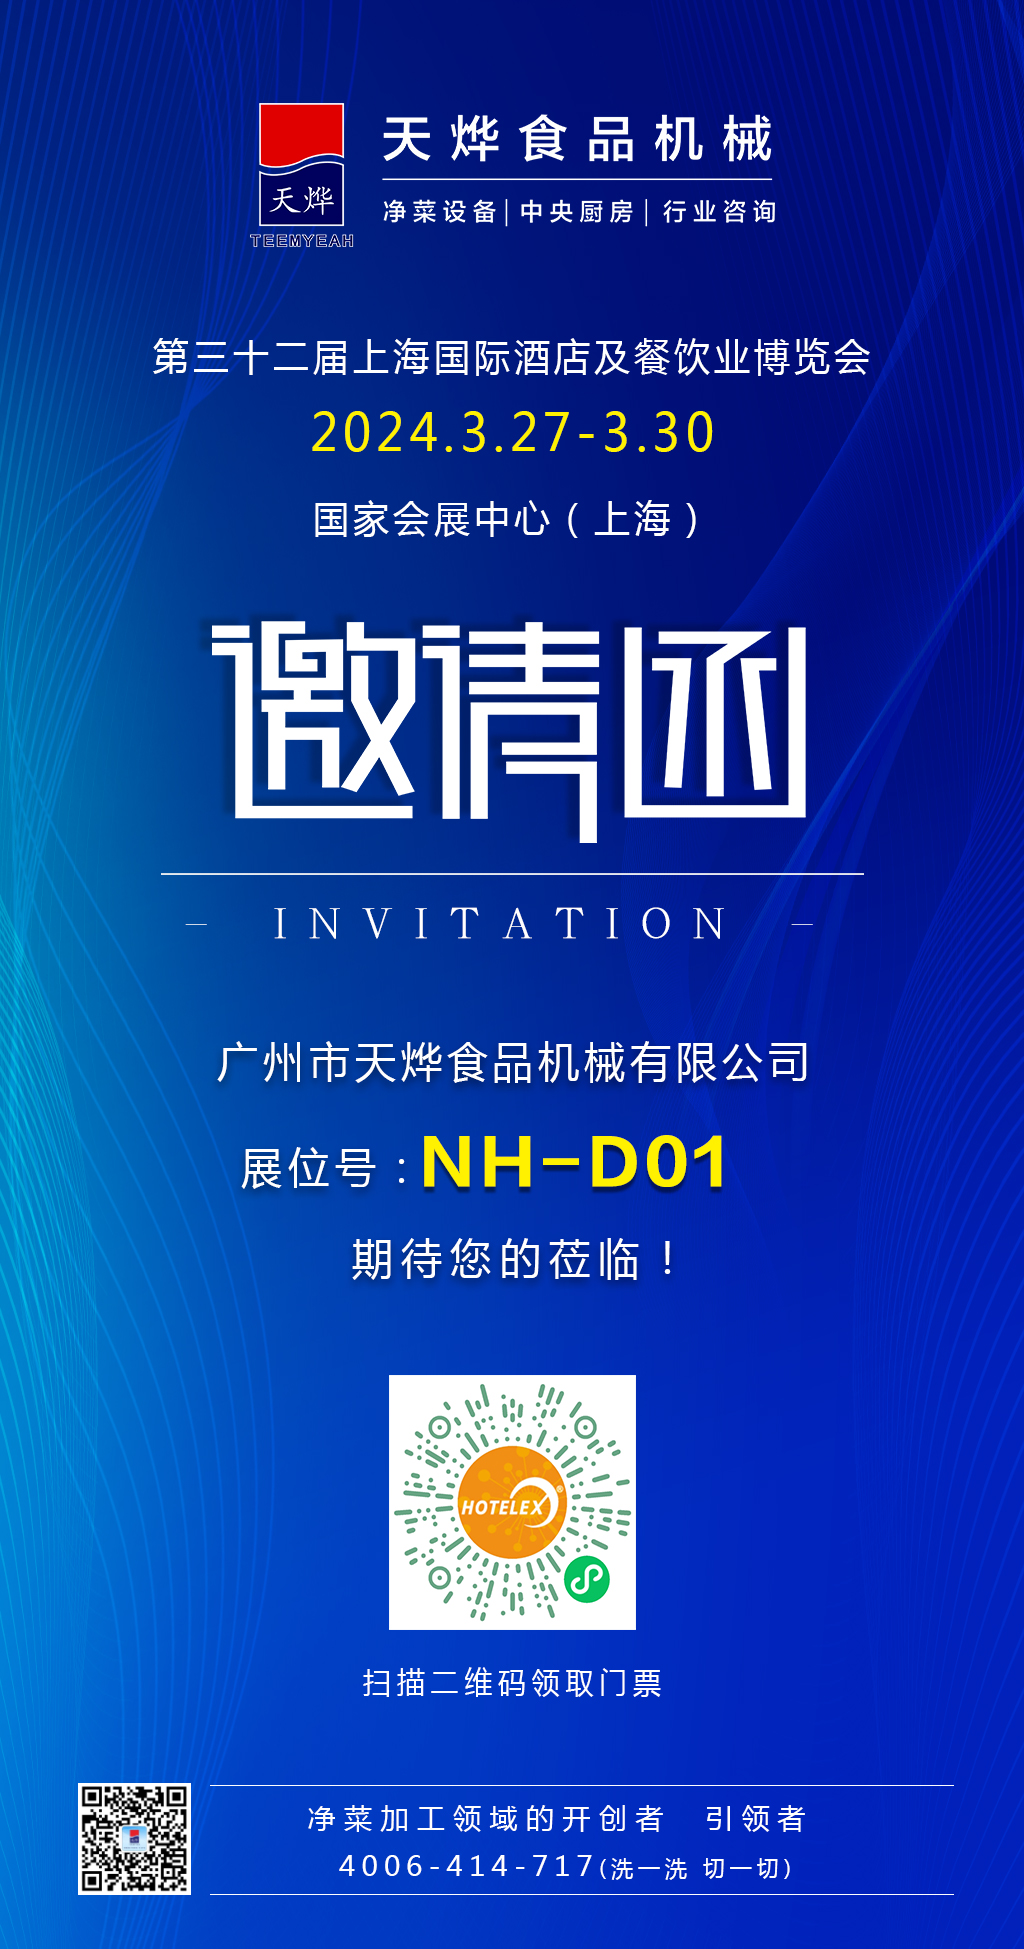 【展会预告】3月27-3月31日，上海&武汉 双城展览，期待与您相约！